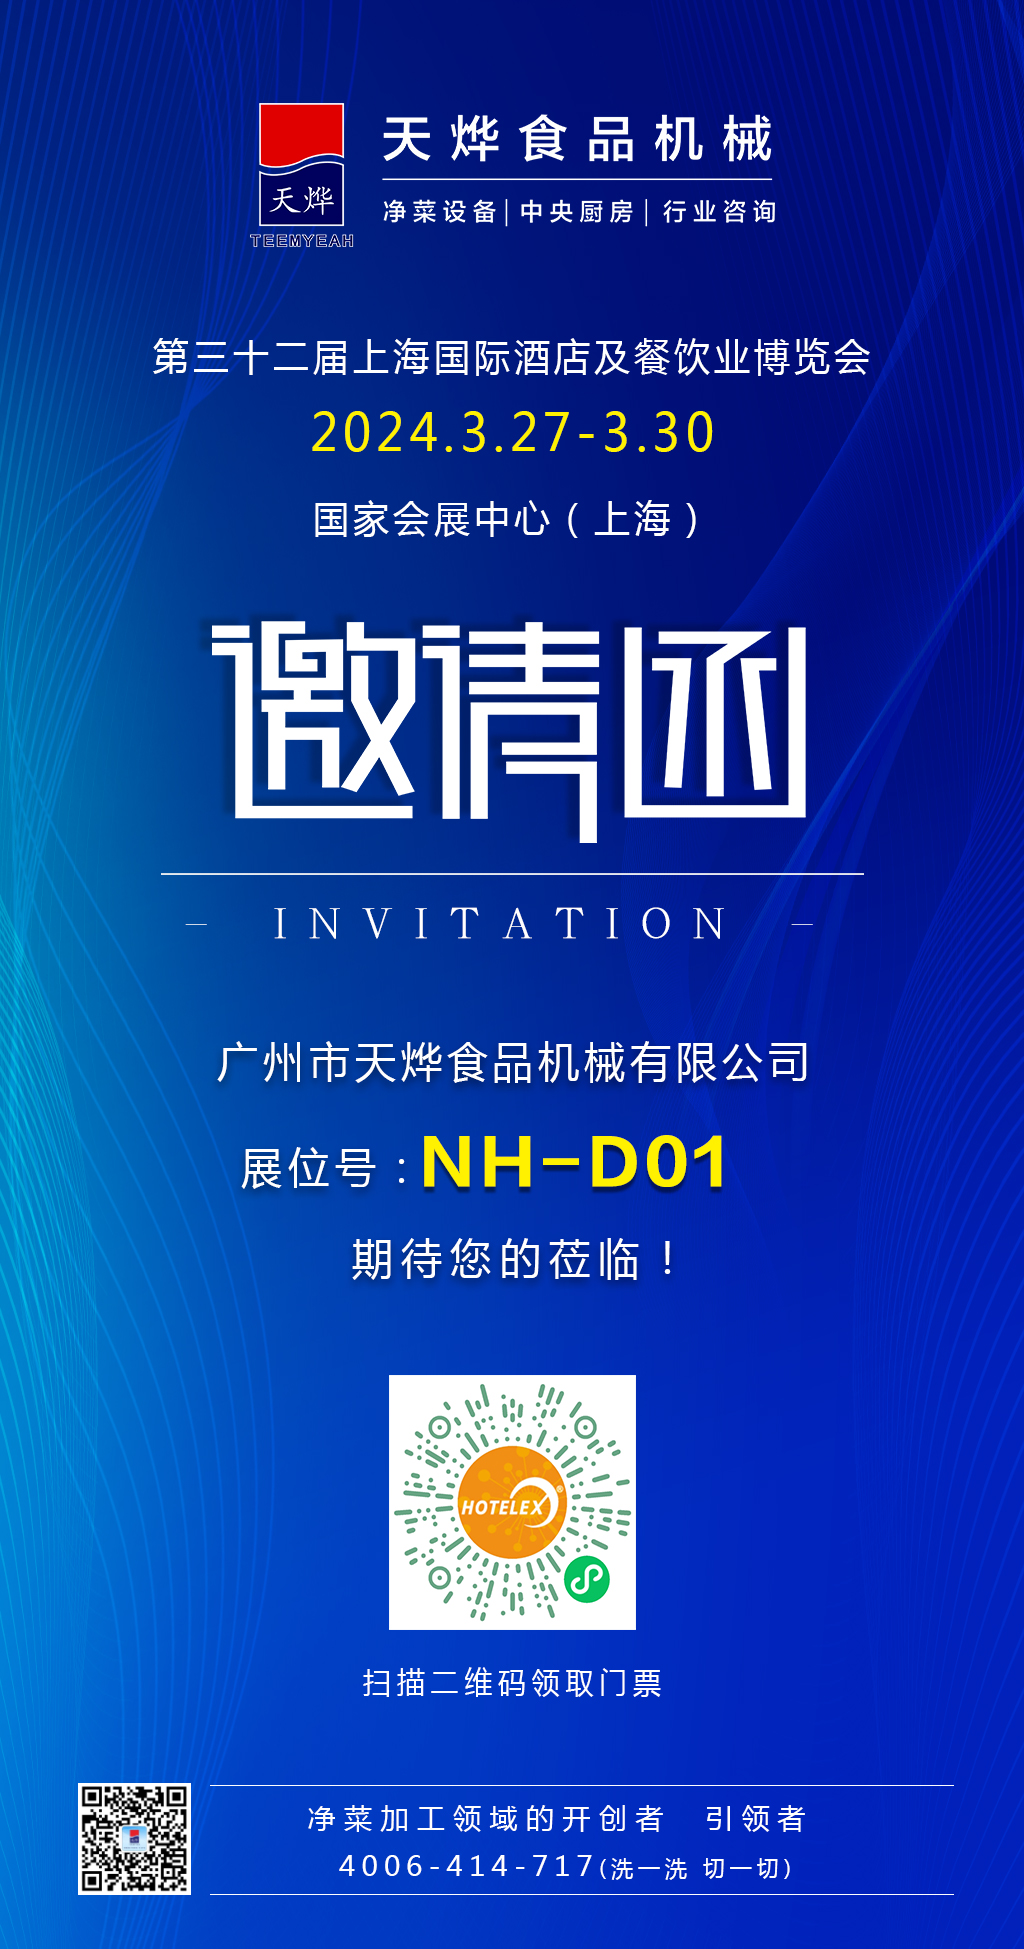 【展会预告】3月27-3月31日，上海&武汉 双城展览，期待与您相约！